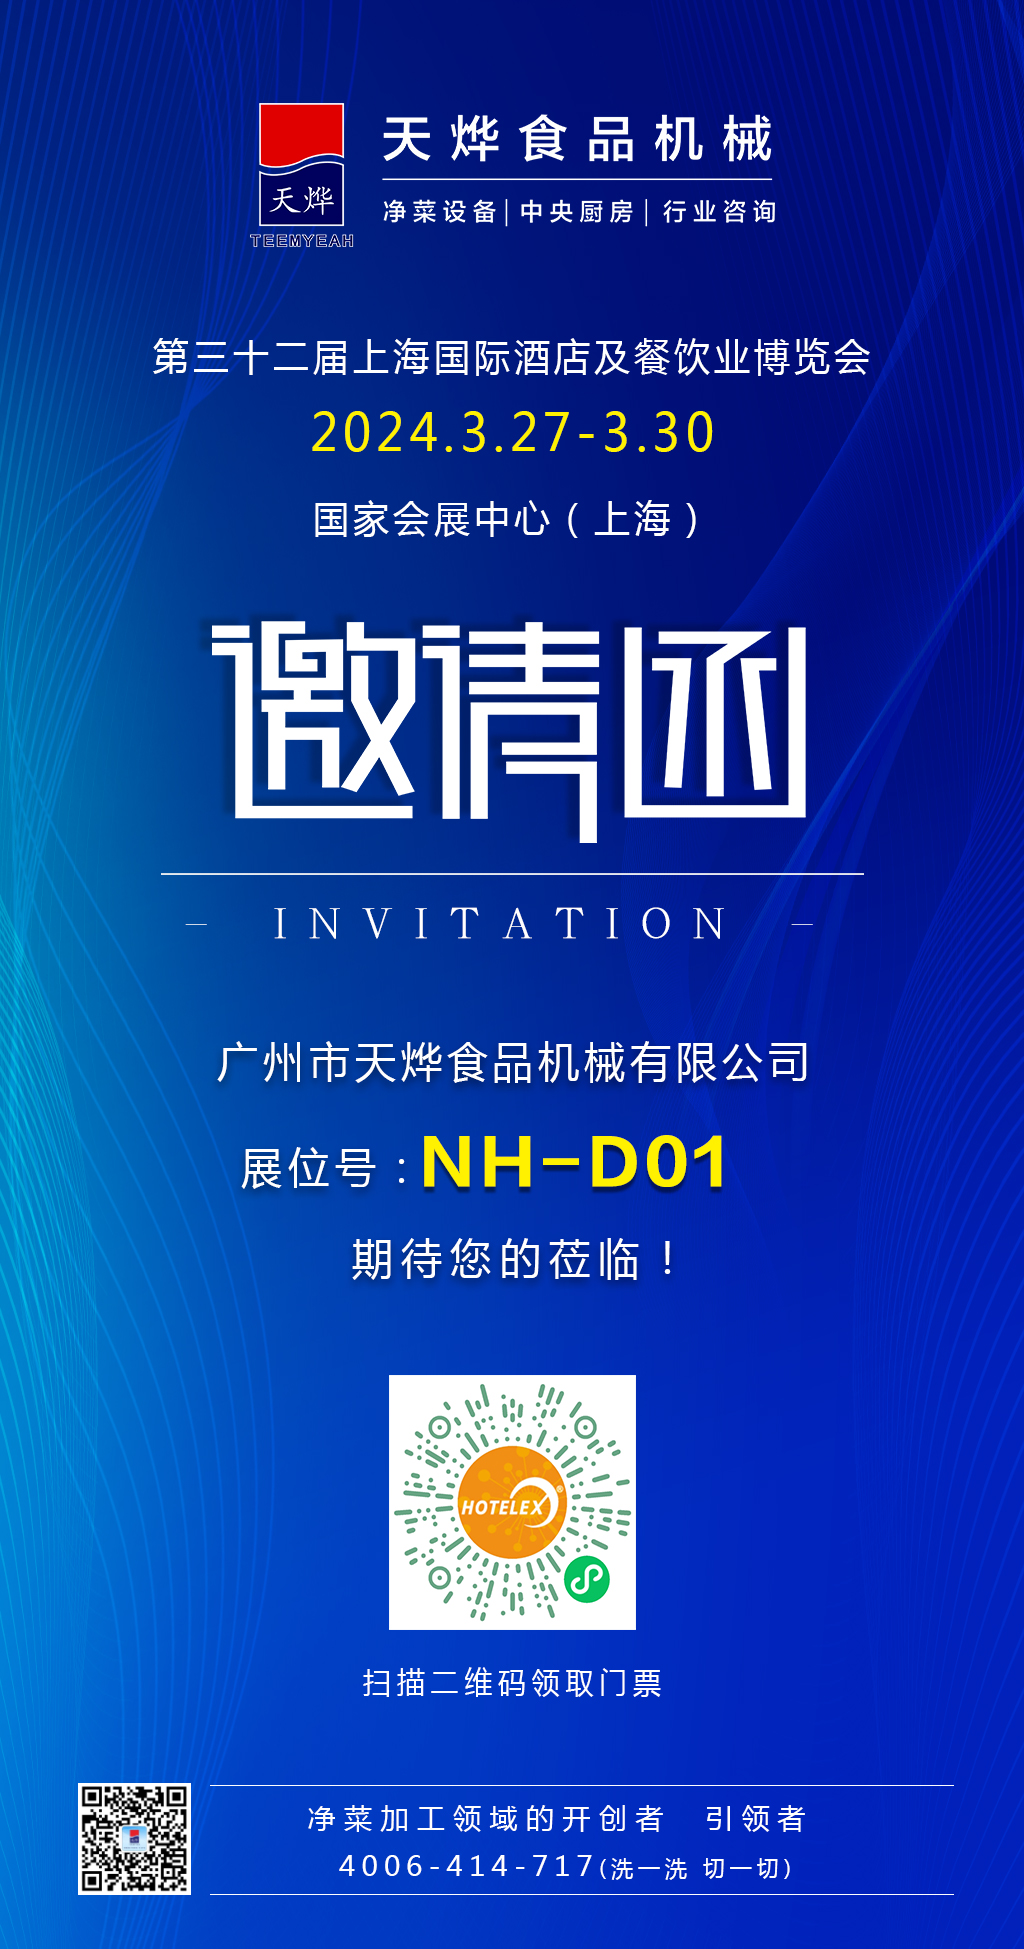 【展会预告】3月27-3月31日，上海&武汉 双城展览，期待与您相约！